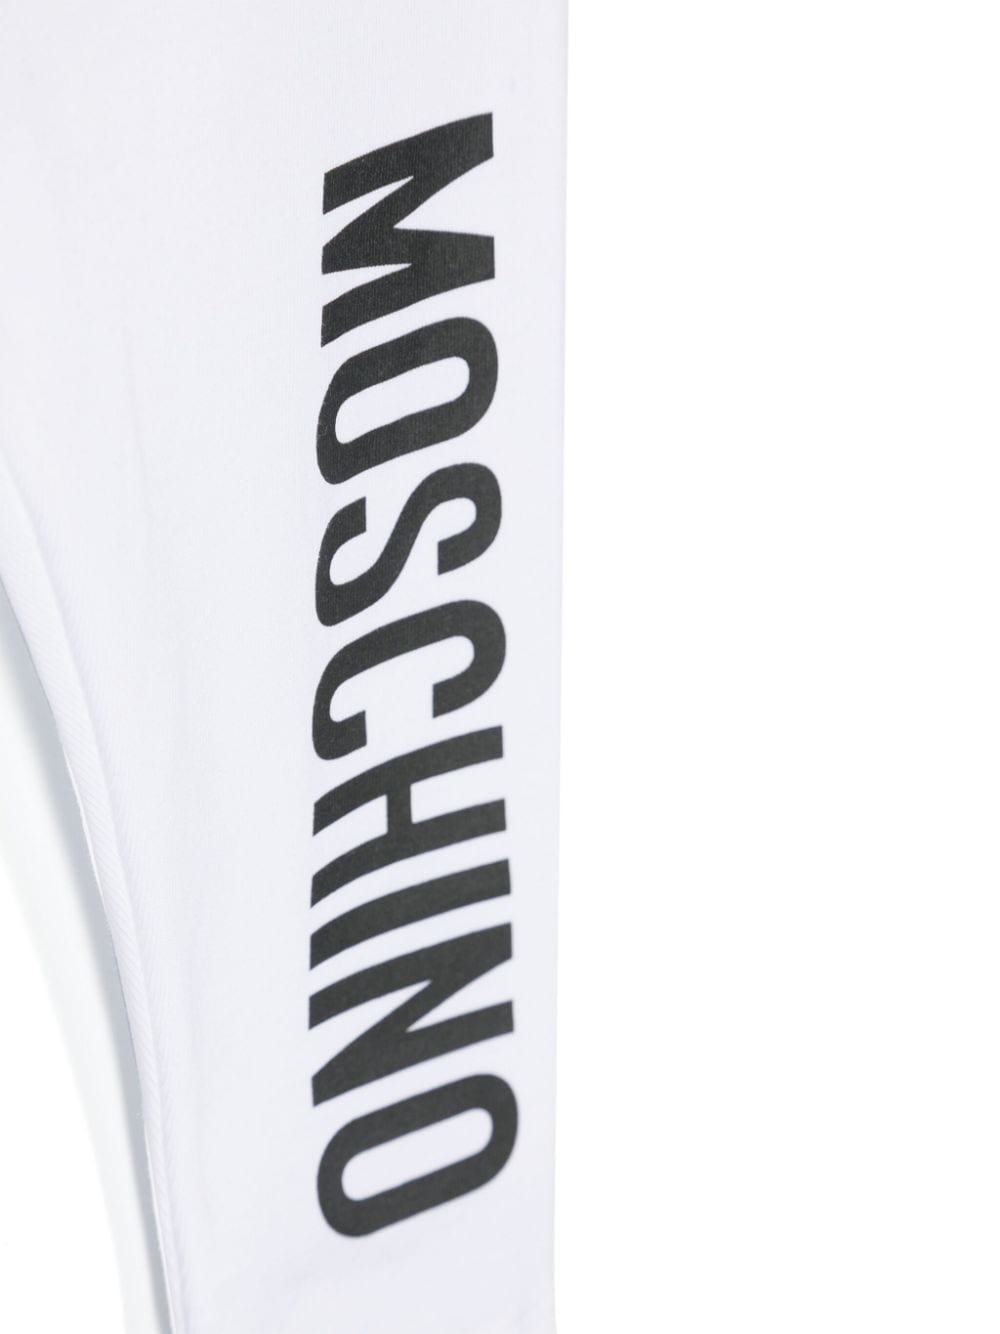 Moschino Kids Legging met logoprint Wit